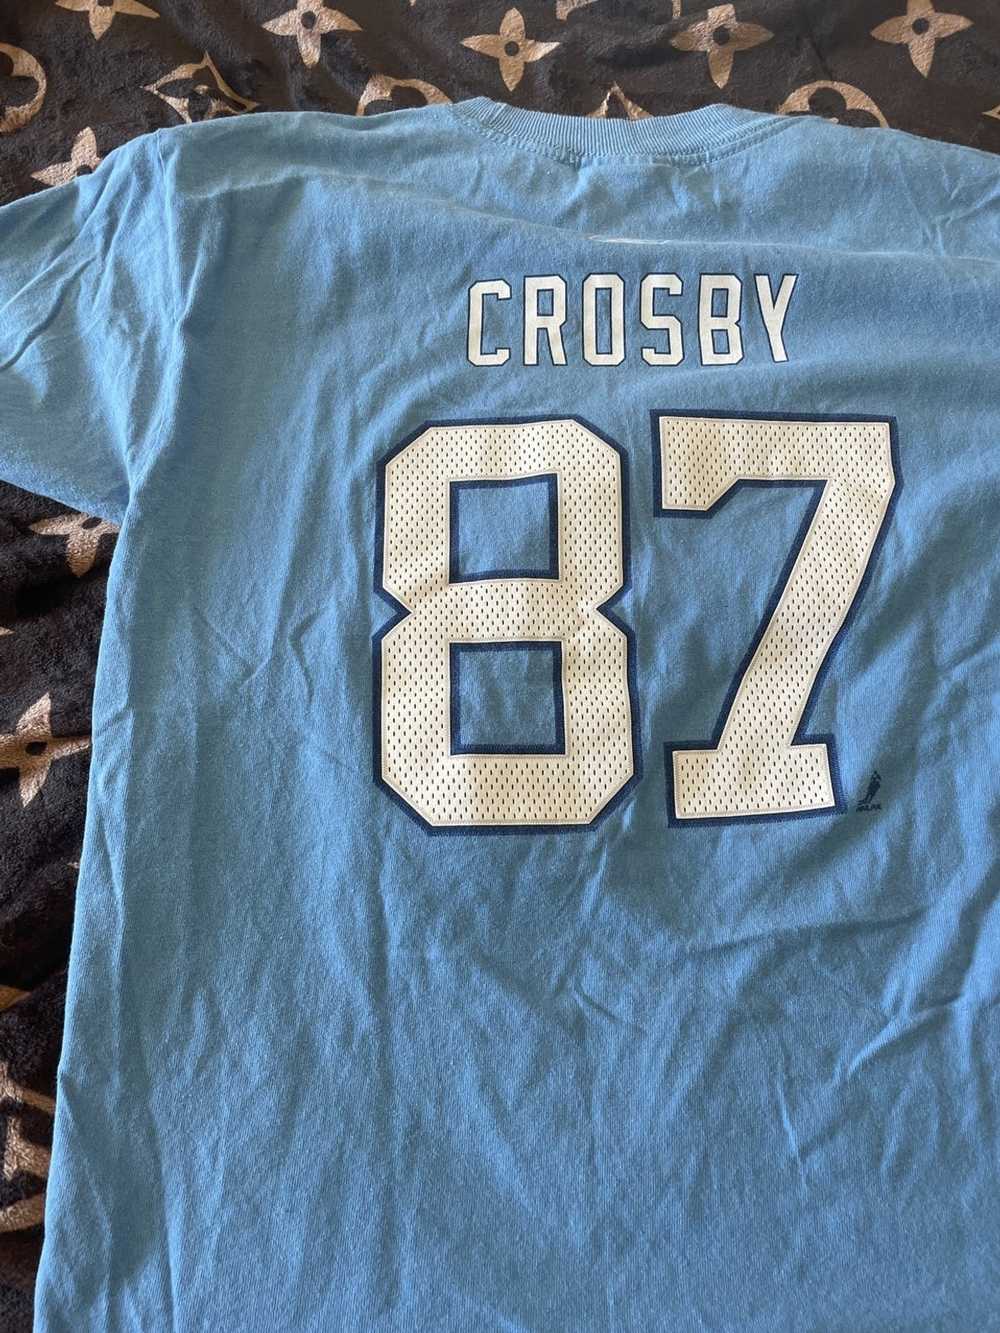 Reebok Crosby Jersey shirt - image 2